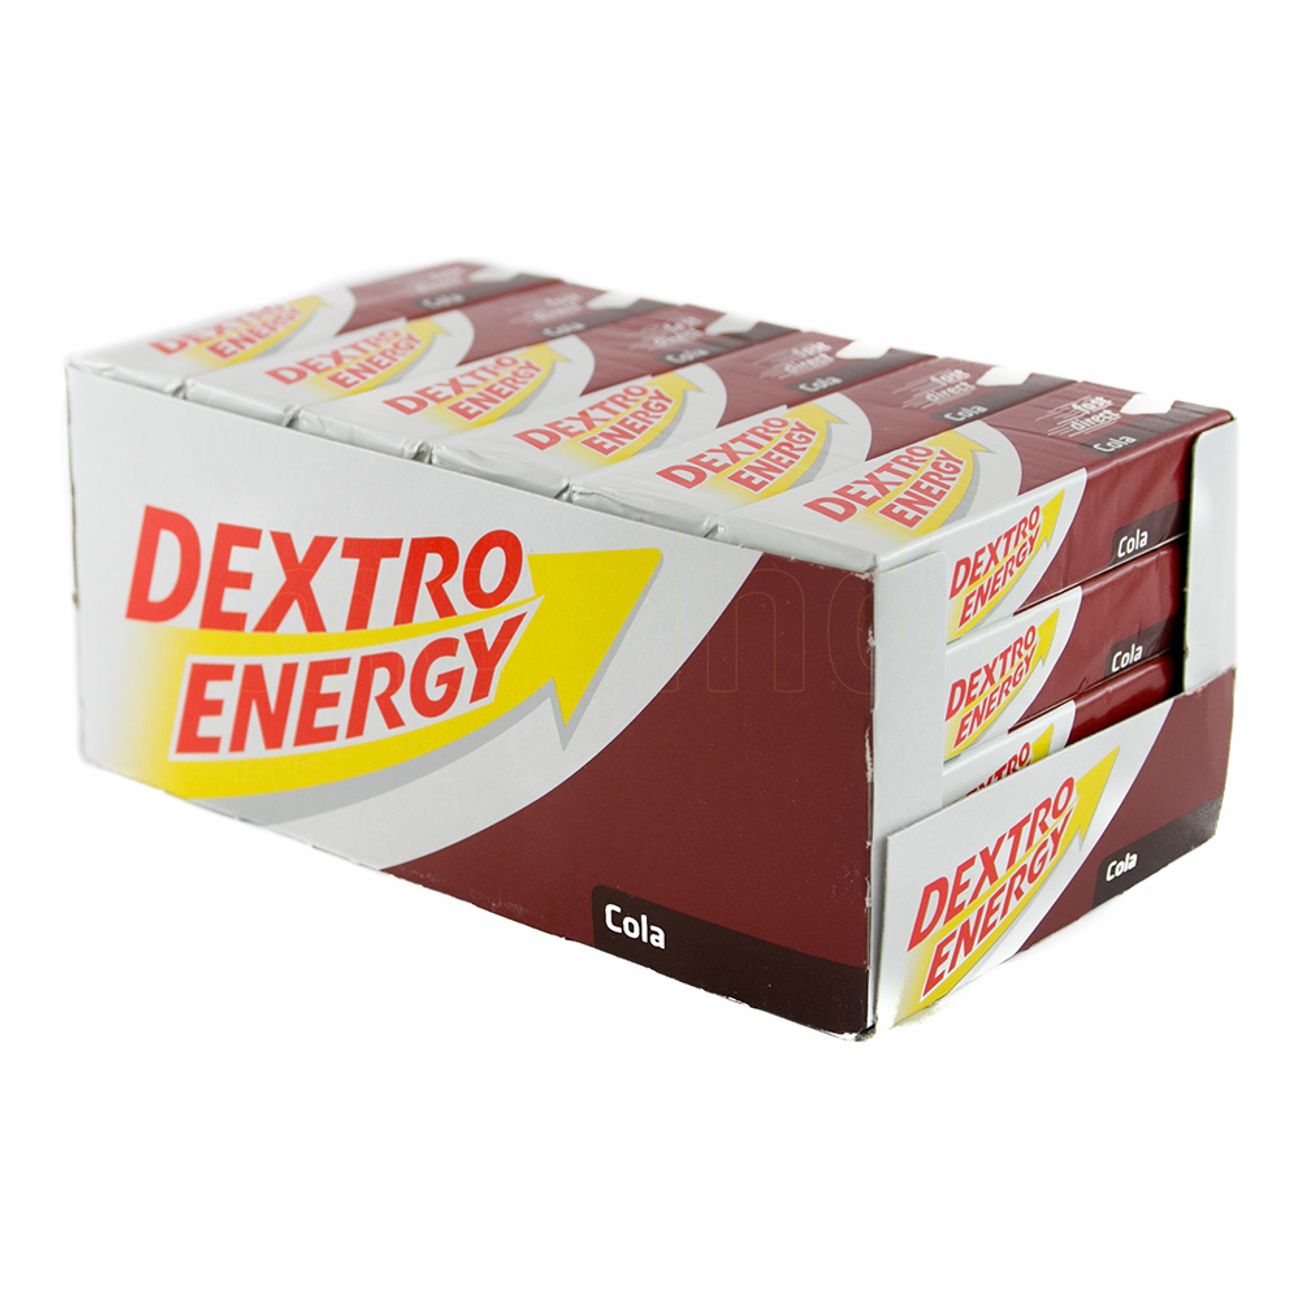 dextro-energy-cola-72242-2